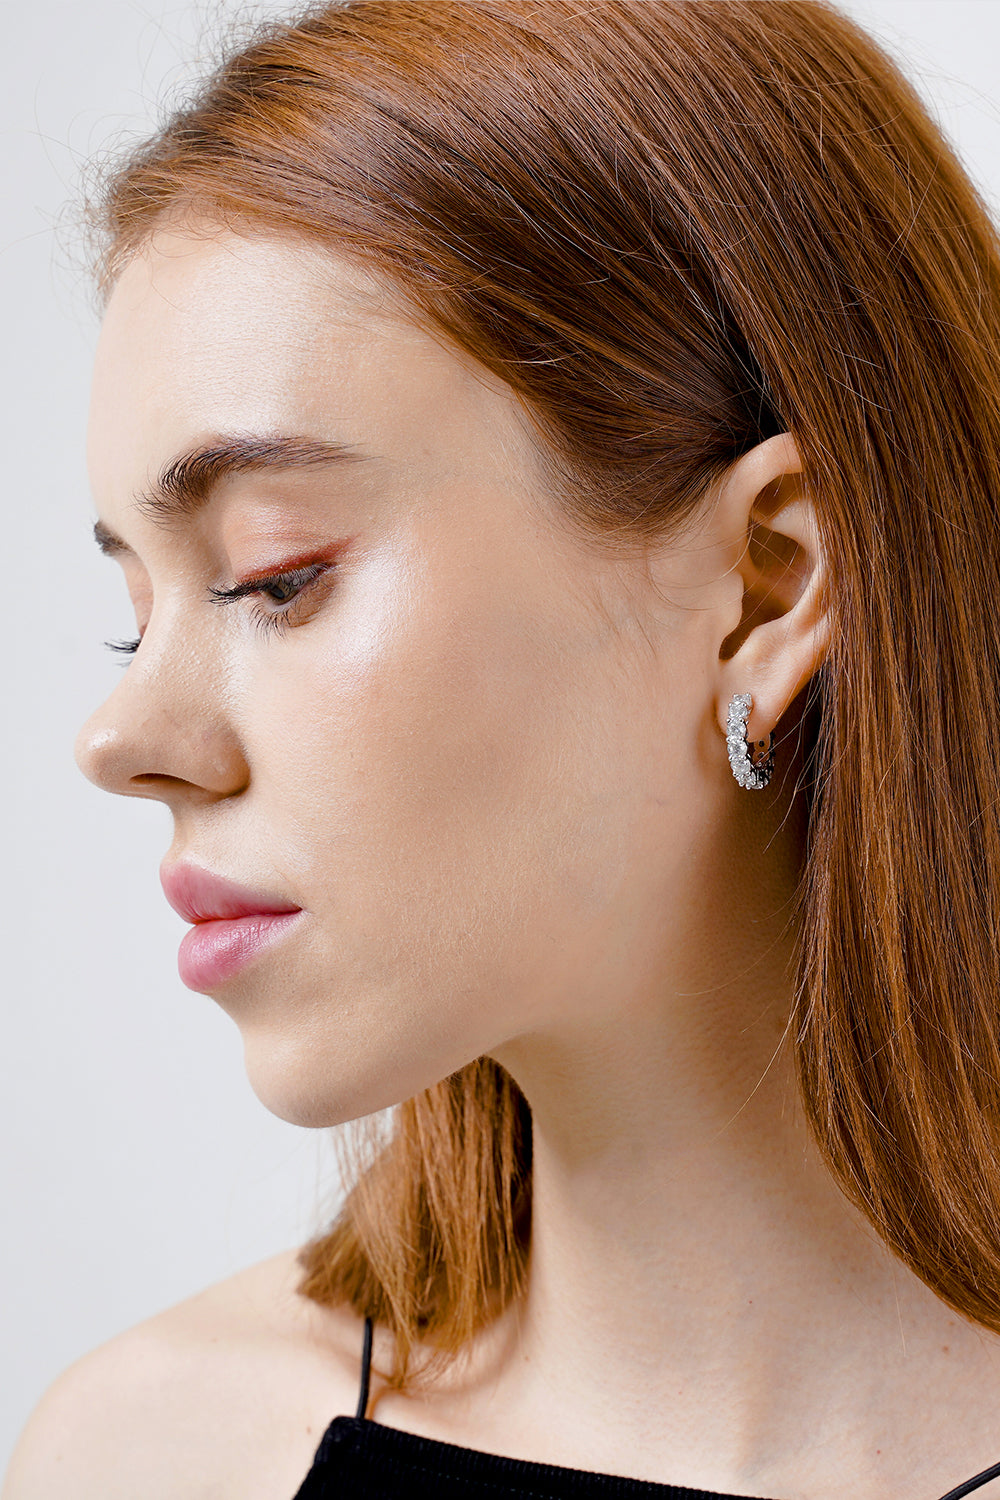 20mm eternity earrings